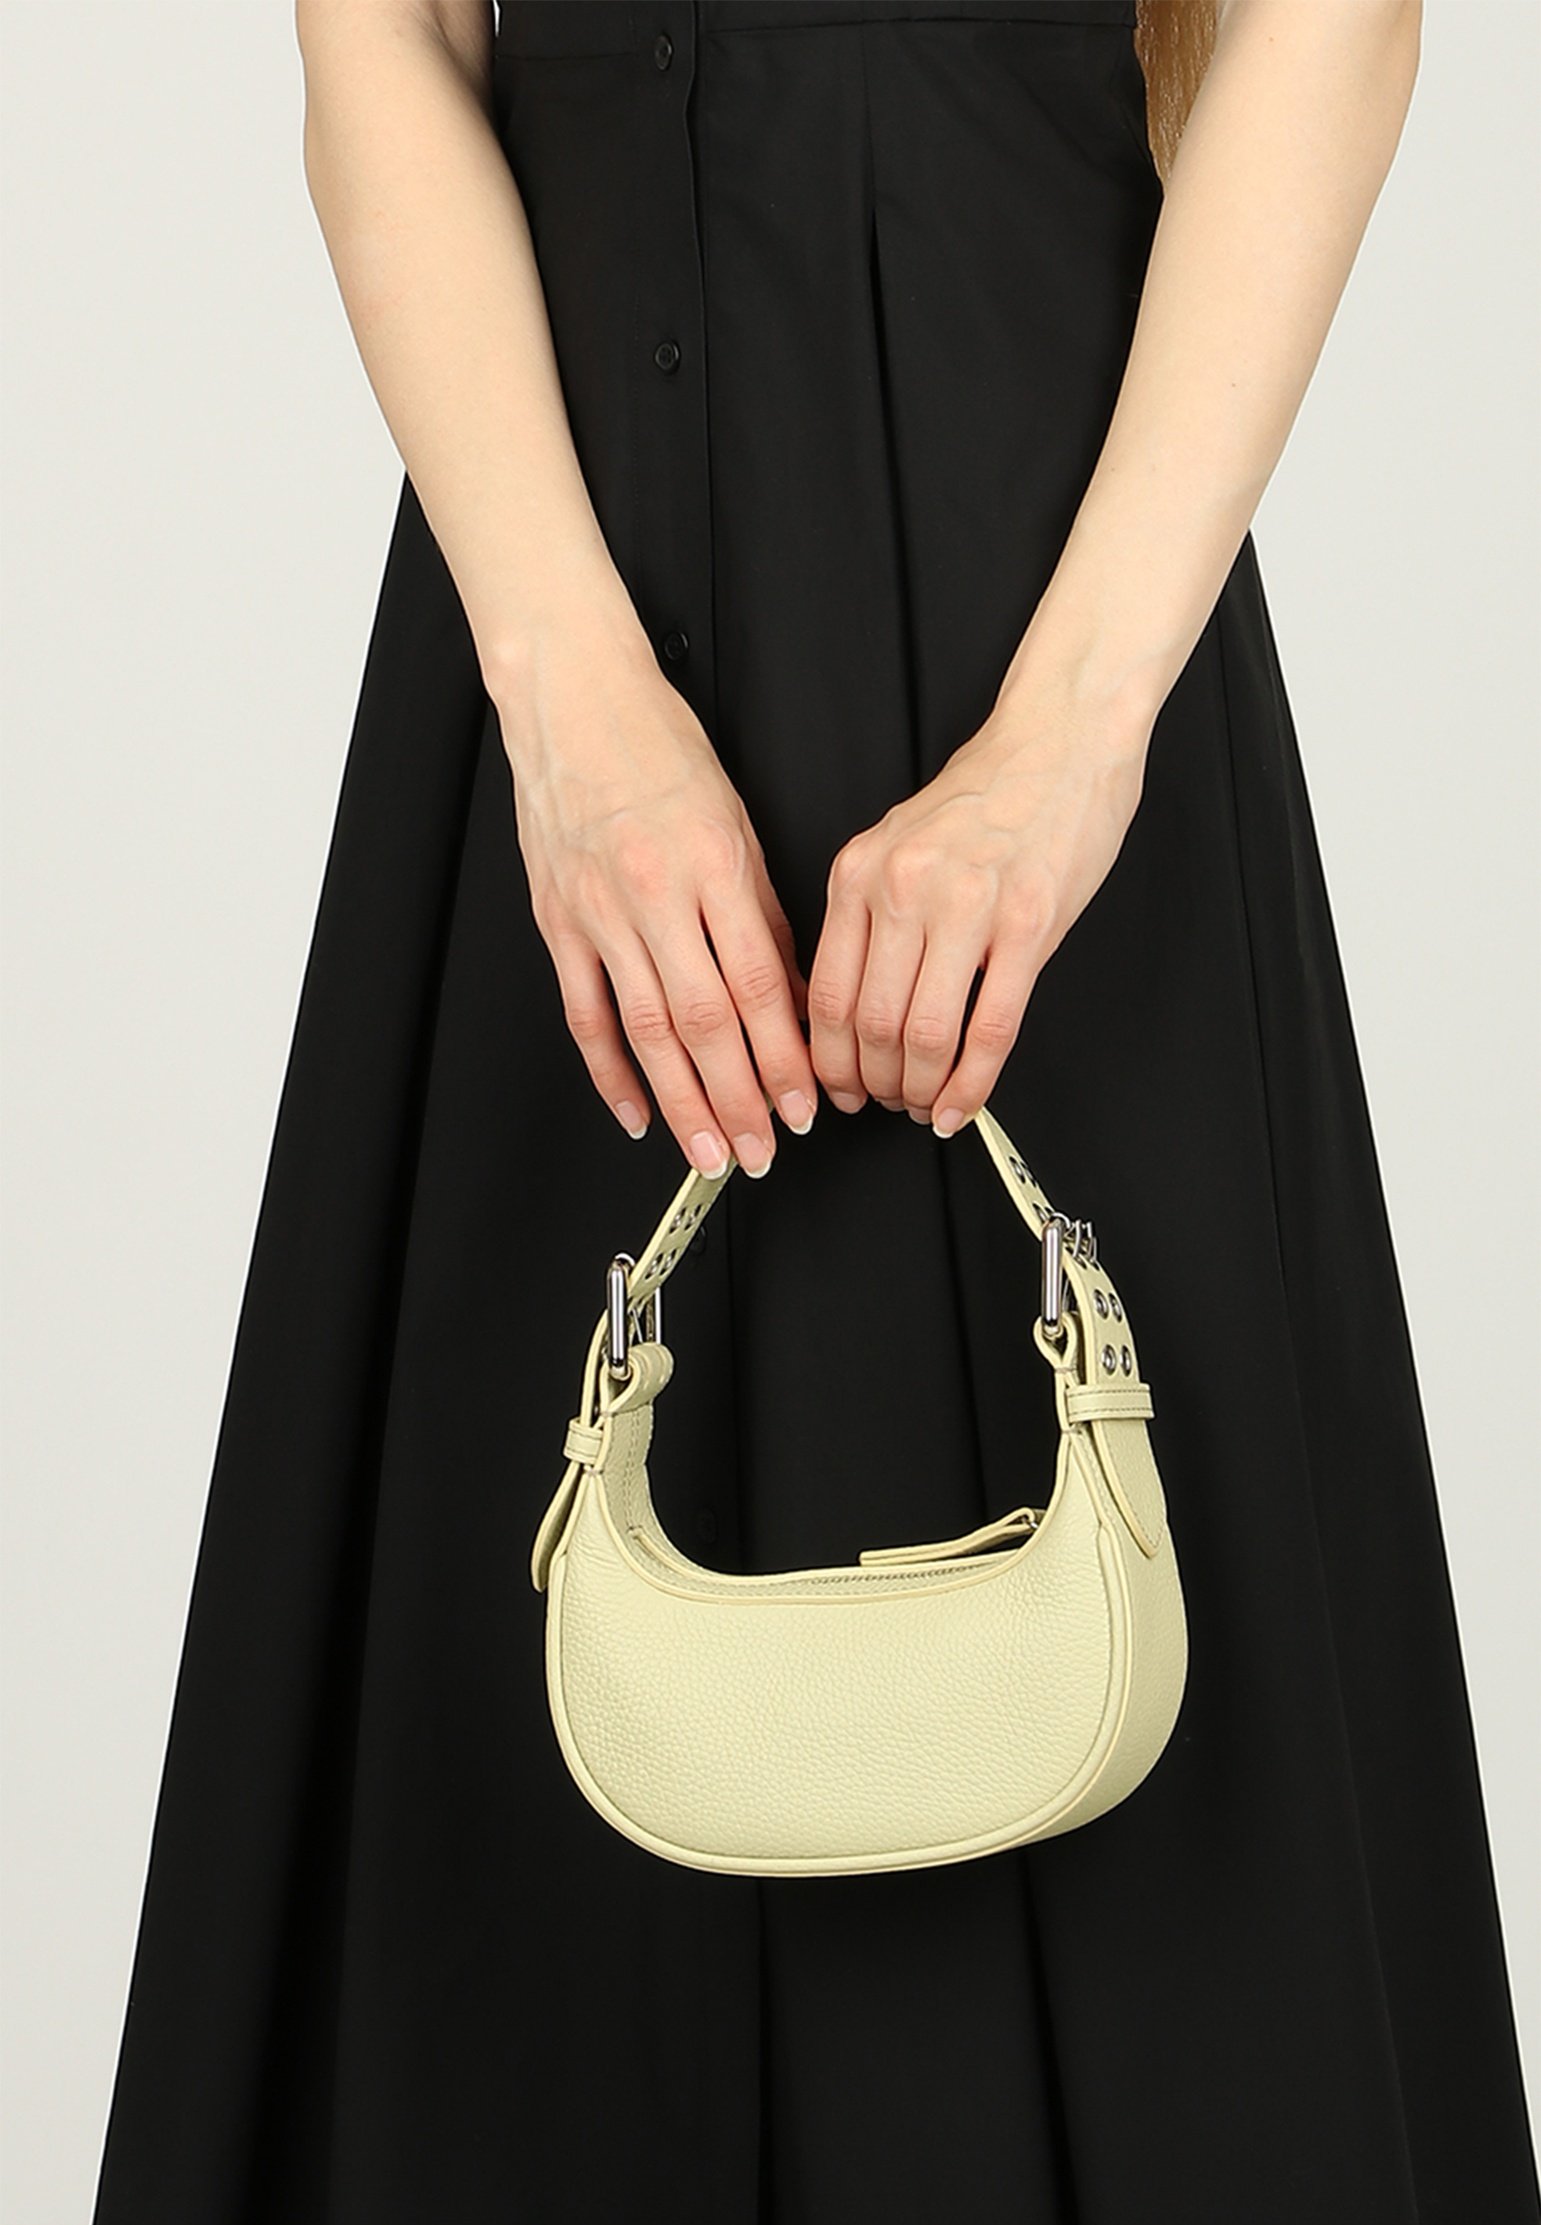 Shoulder Bag BY FAR Color: olive (Code: 603) in online store Allure